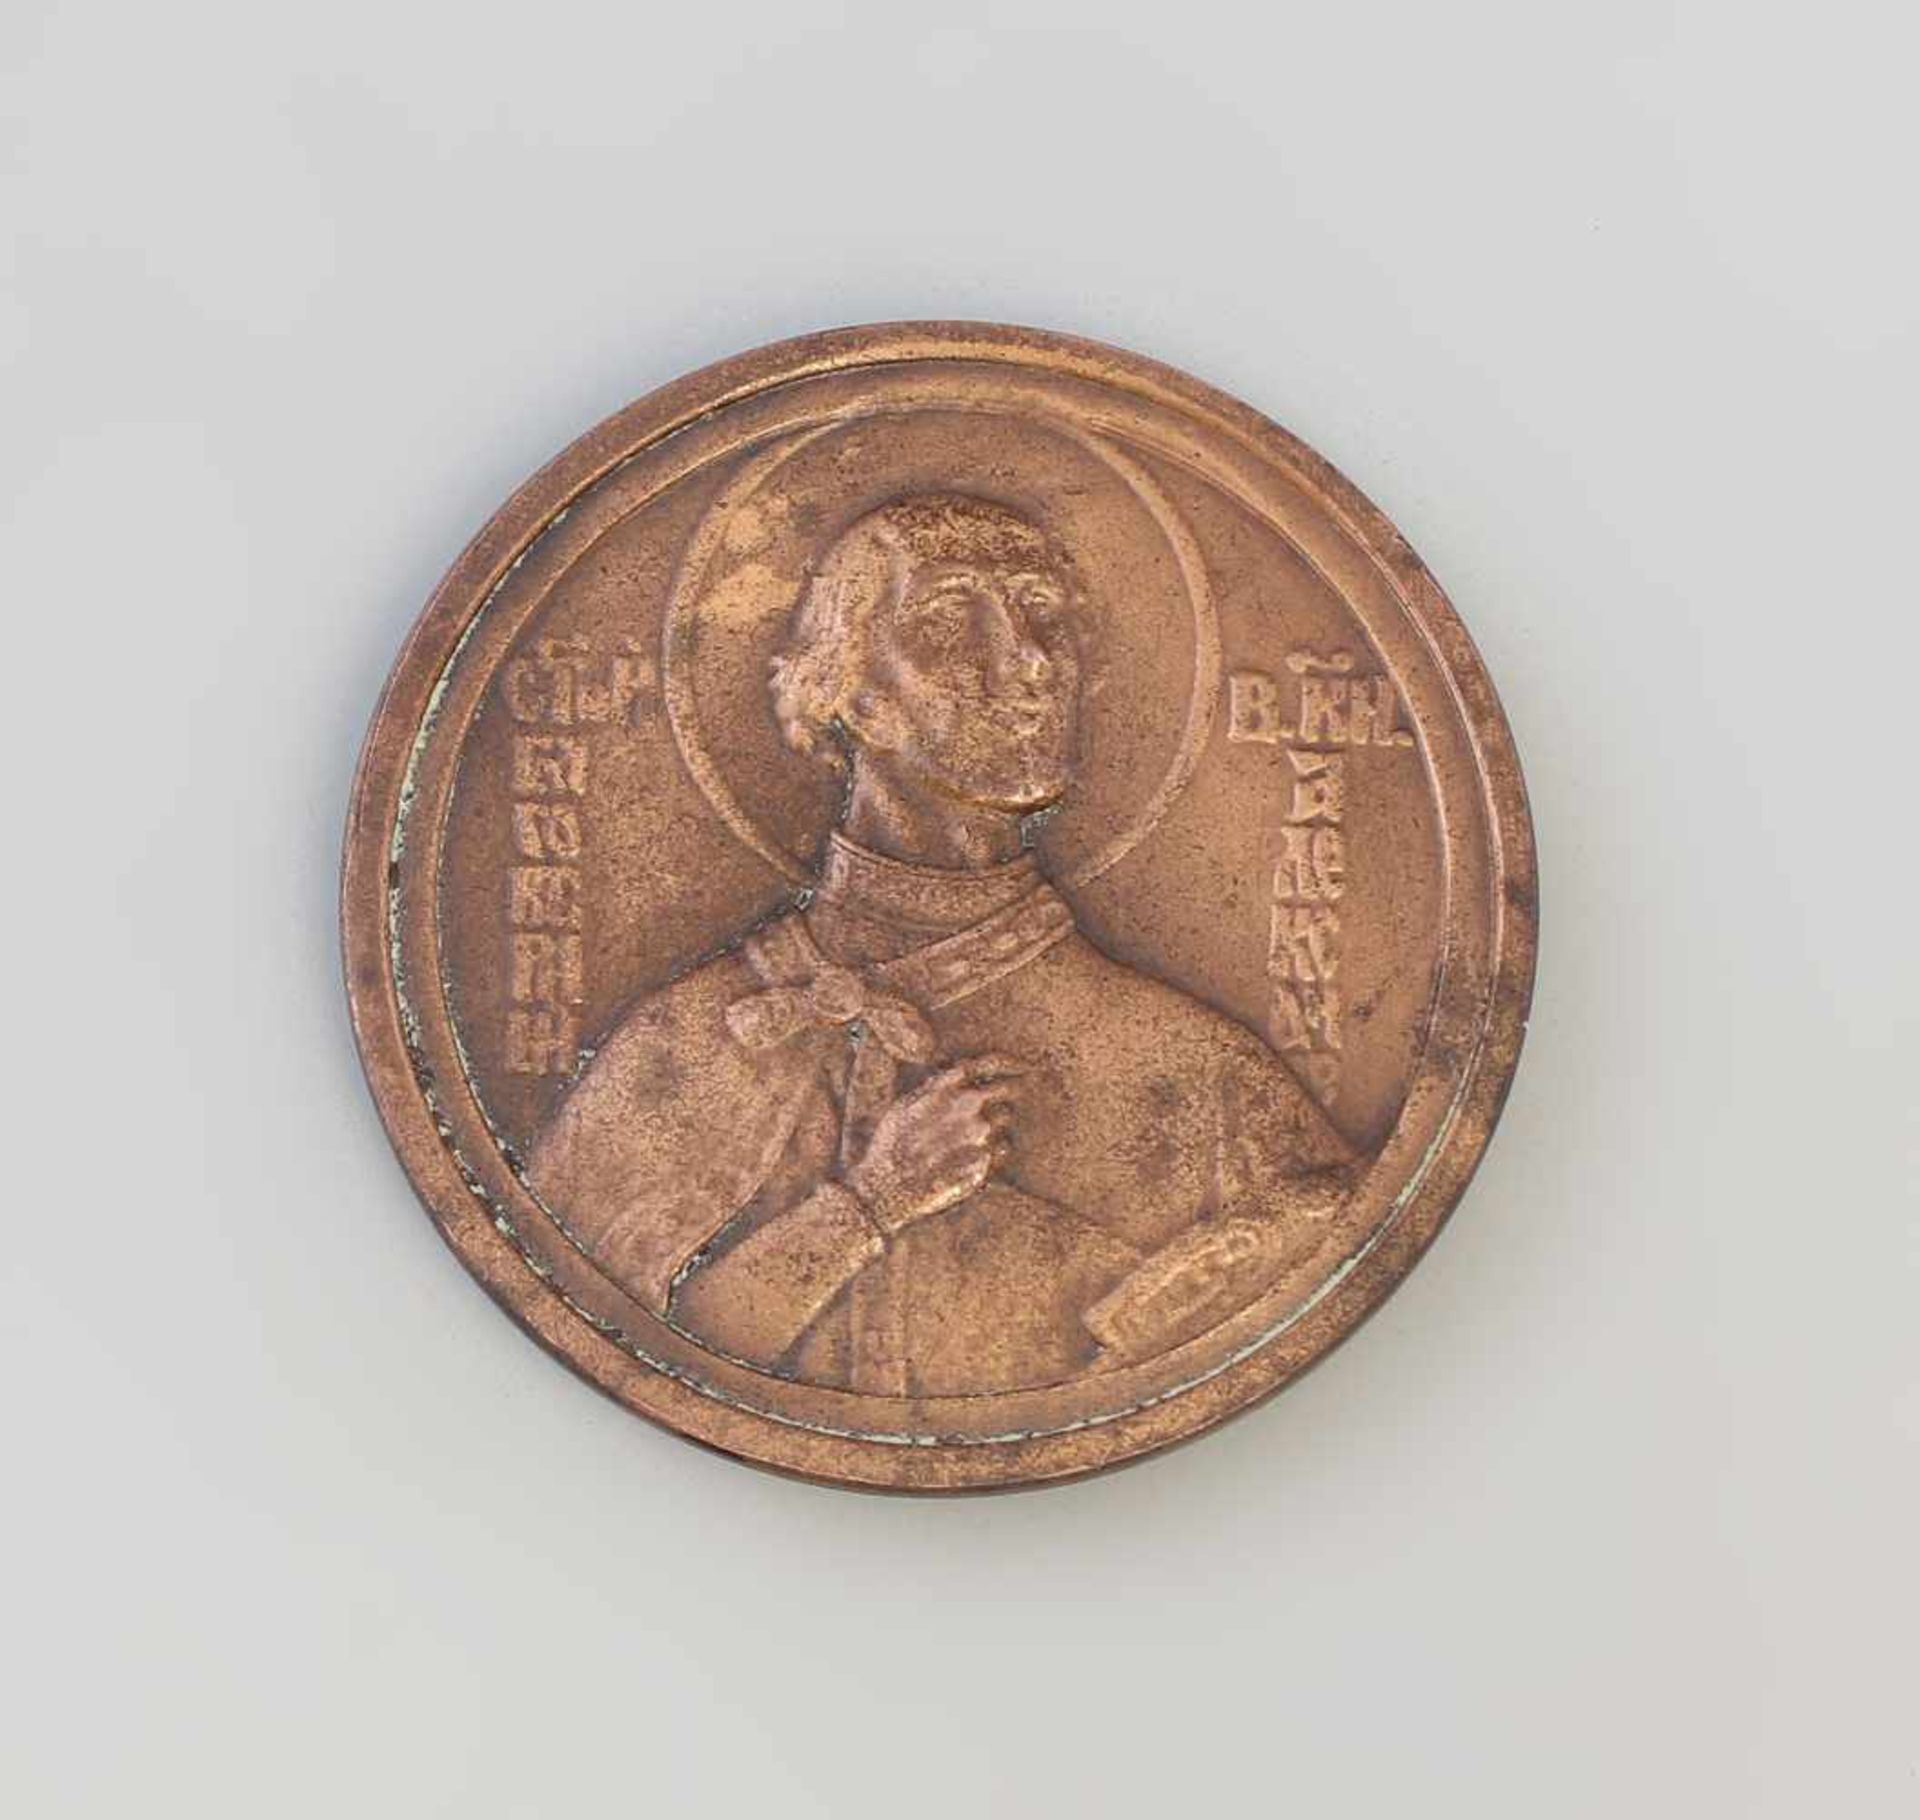 Bulgarische Medaille Alexander Newski Kathedrale 1924bronzefarb. Metall, zur Weihe Alexander-